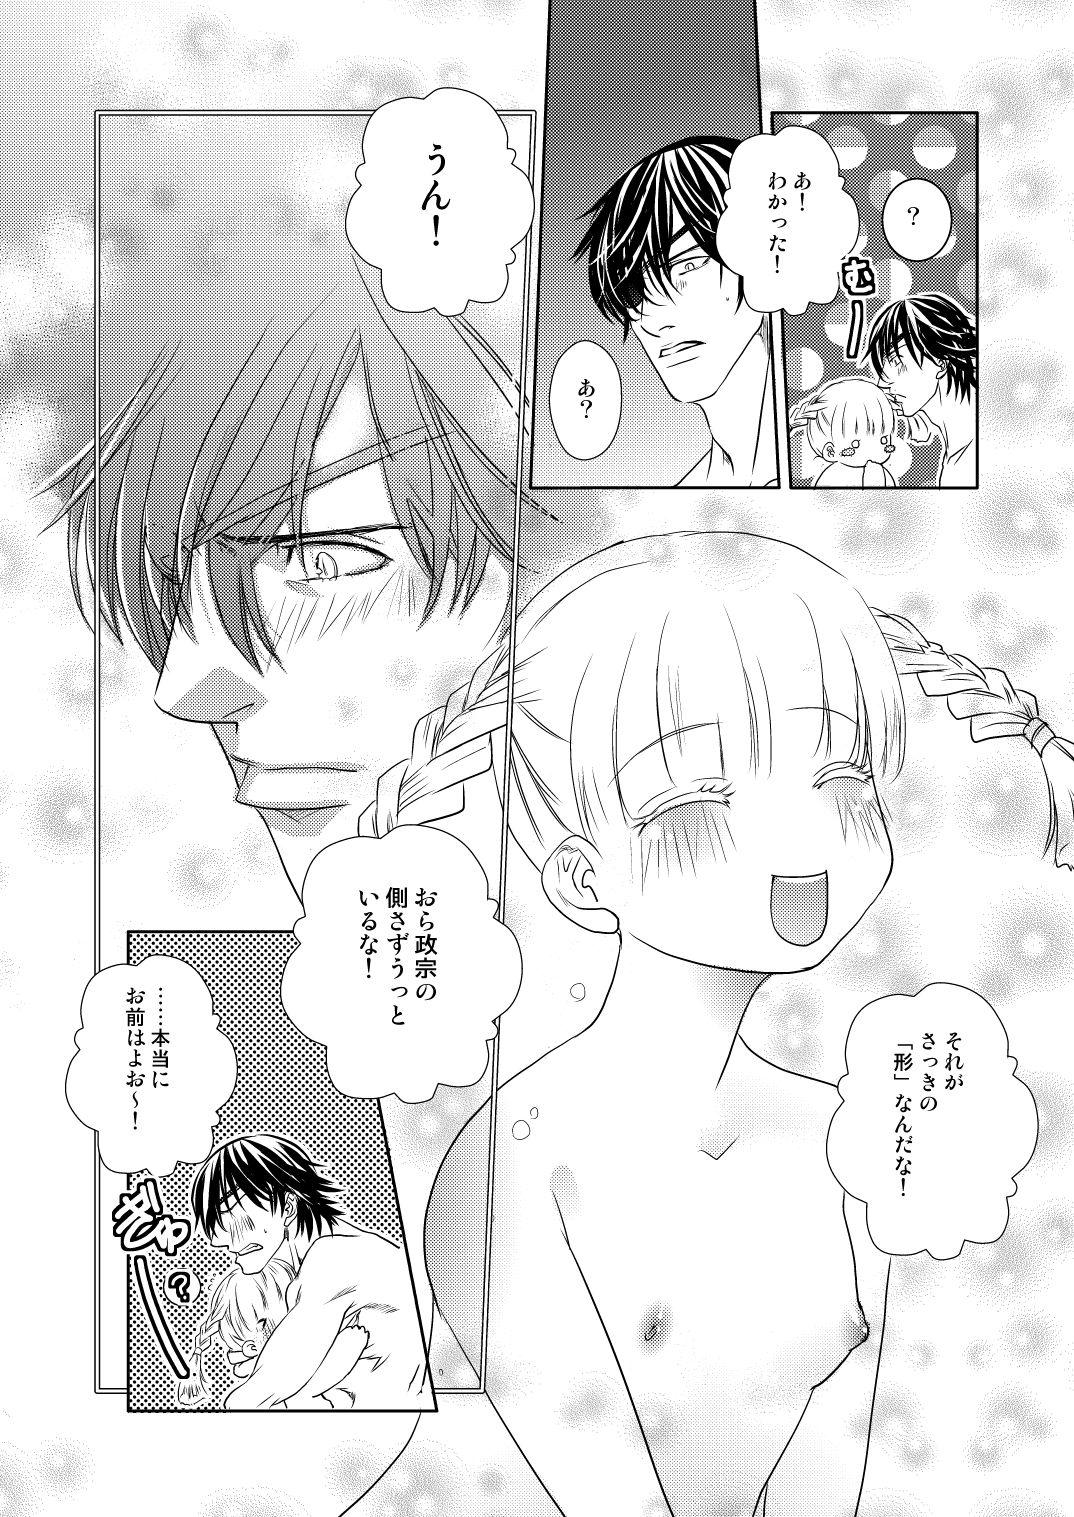 Trannies Fuyu no Okomori DateItsu Manga - Sengoku basara Screaming - Page 10